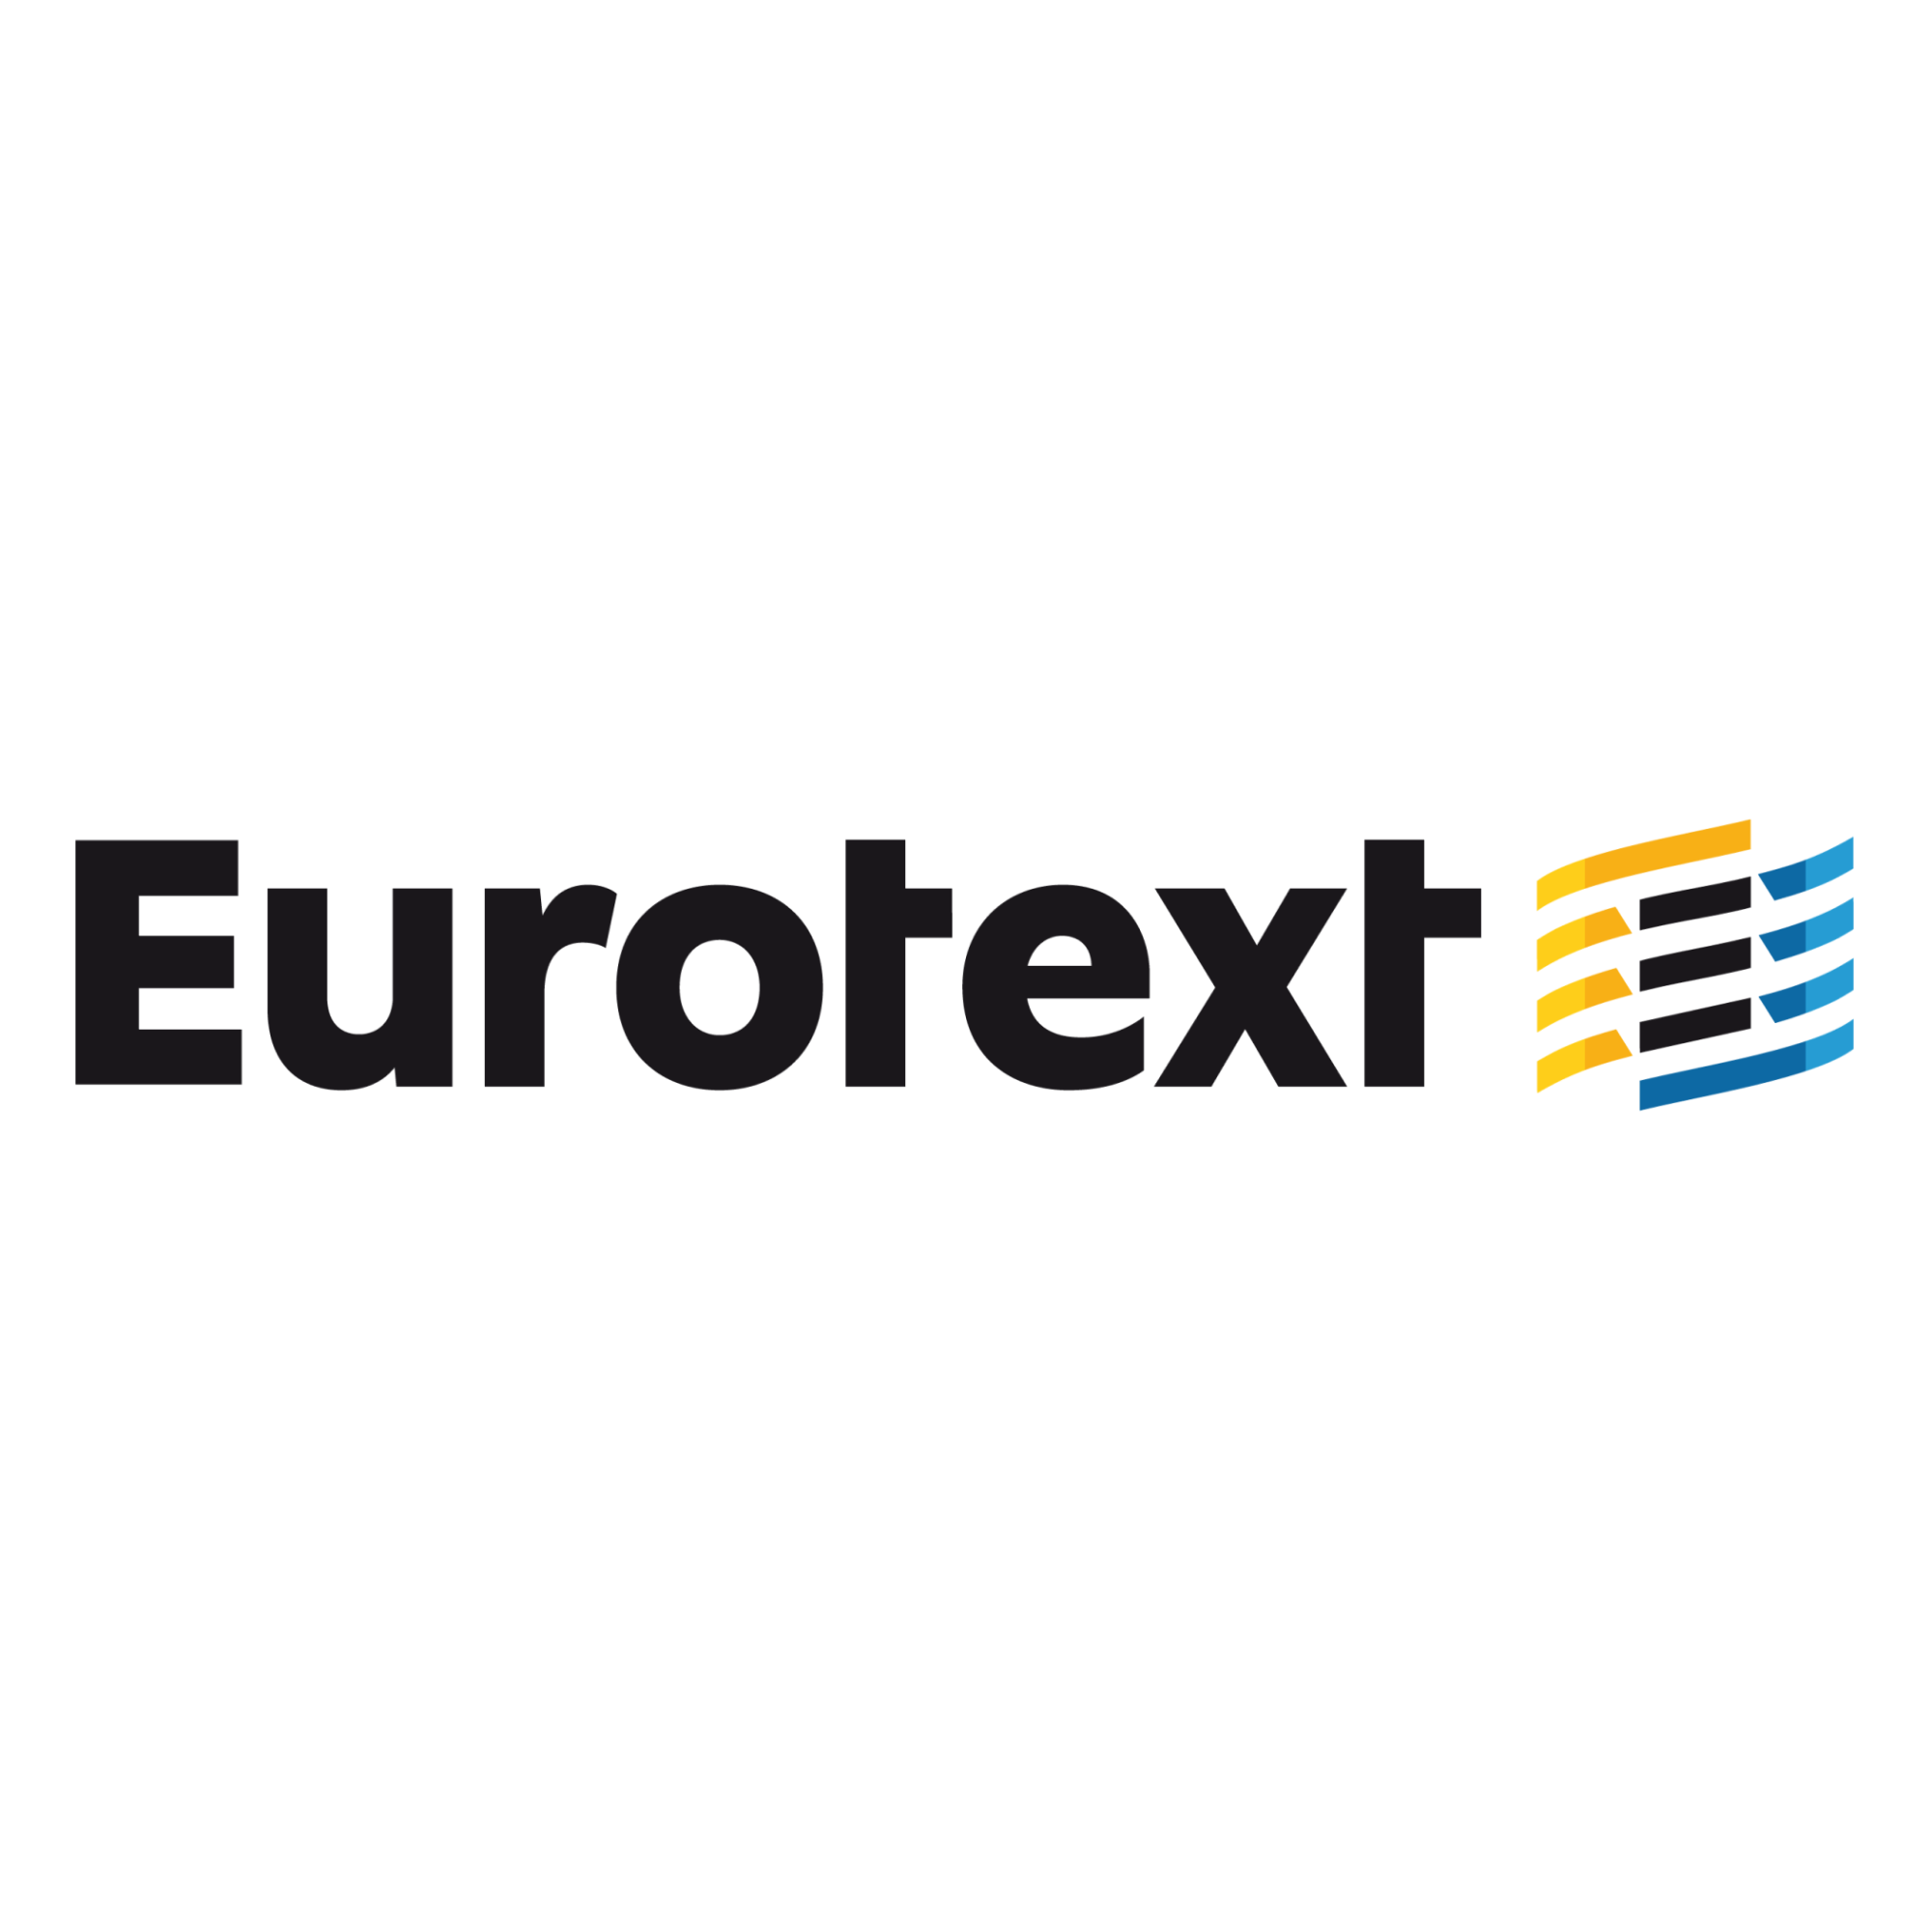 Eurotext